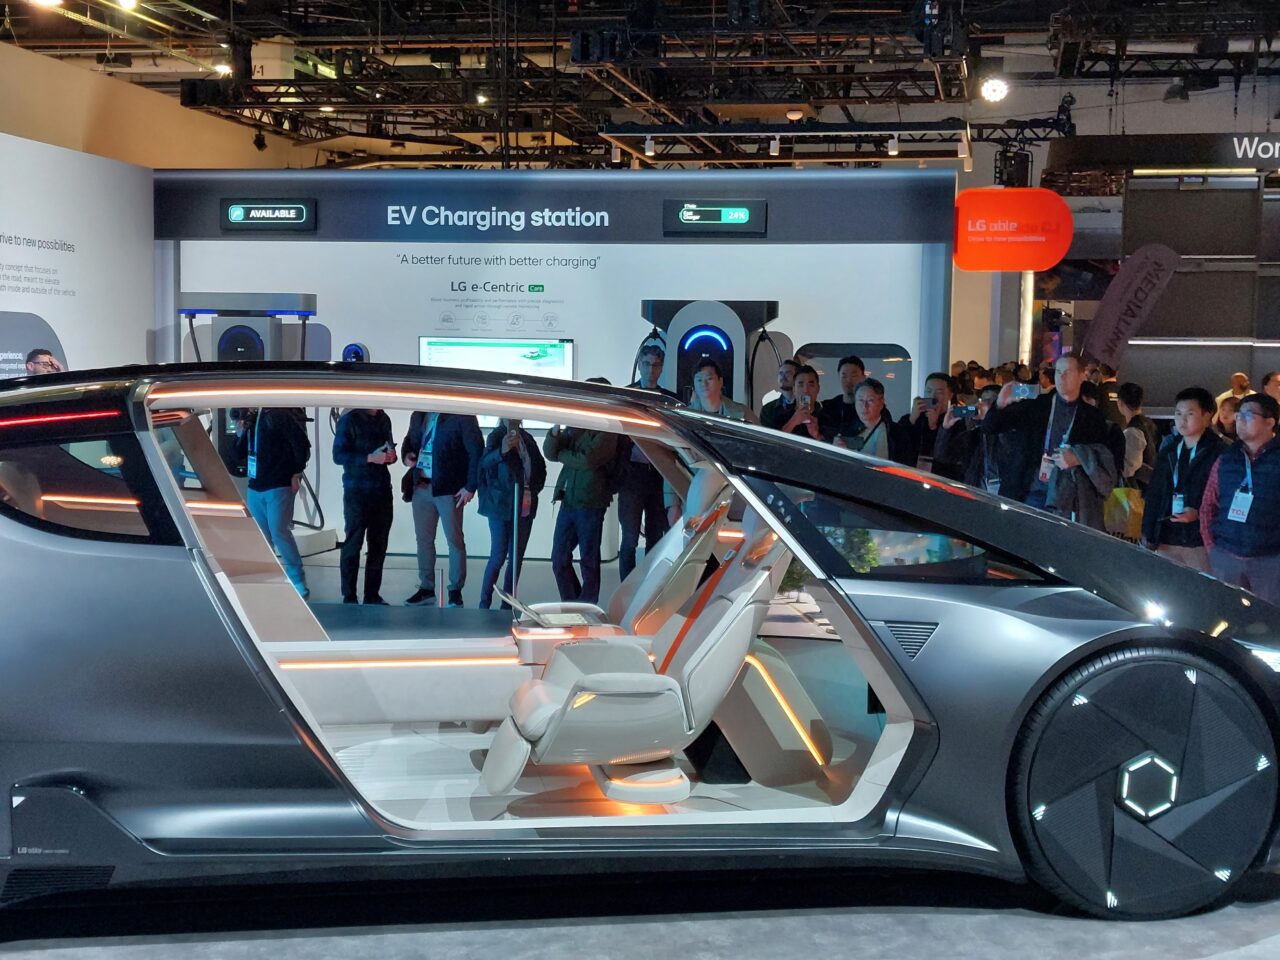 Ekspozycja nowoczesnego elektrycznego samochodu koncepcyjnego z otwartymi drzwiami oraz grupa ludzi oglądających pojazd i stację ładowania EV w tle.